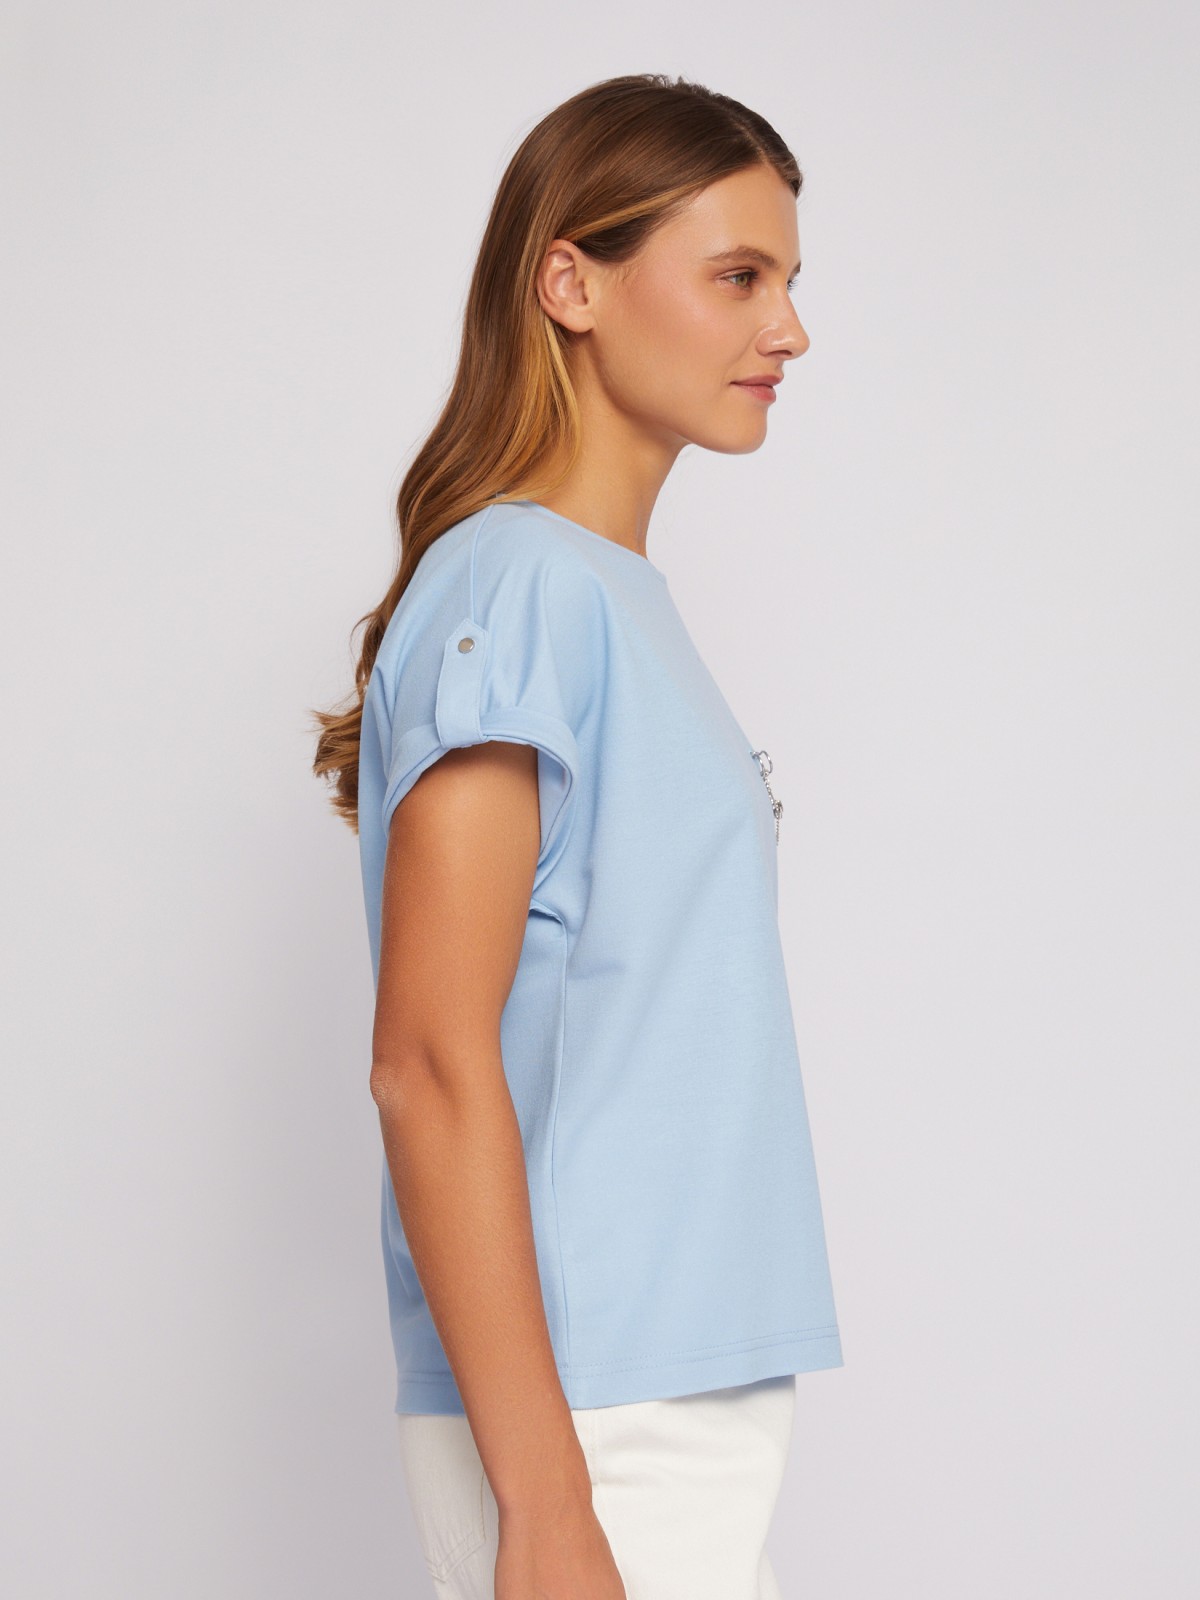 Блузка-футболка с коротким рукавом и брошью